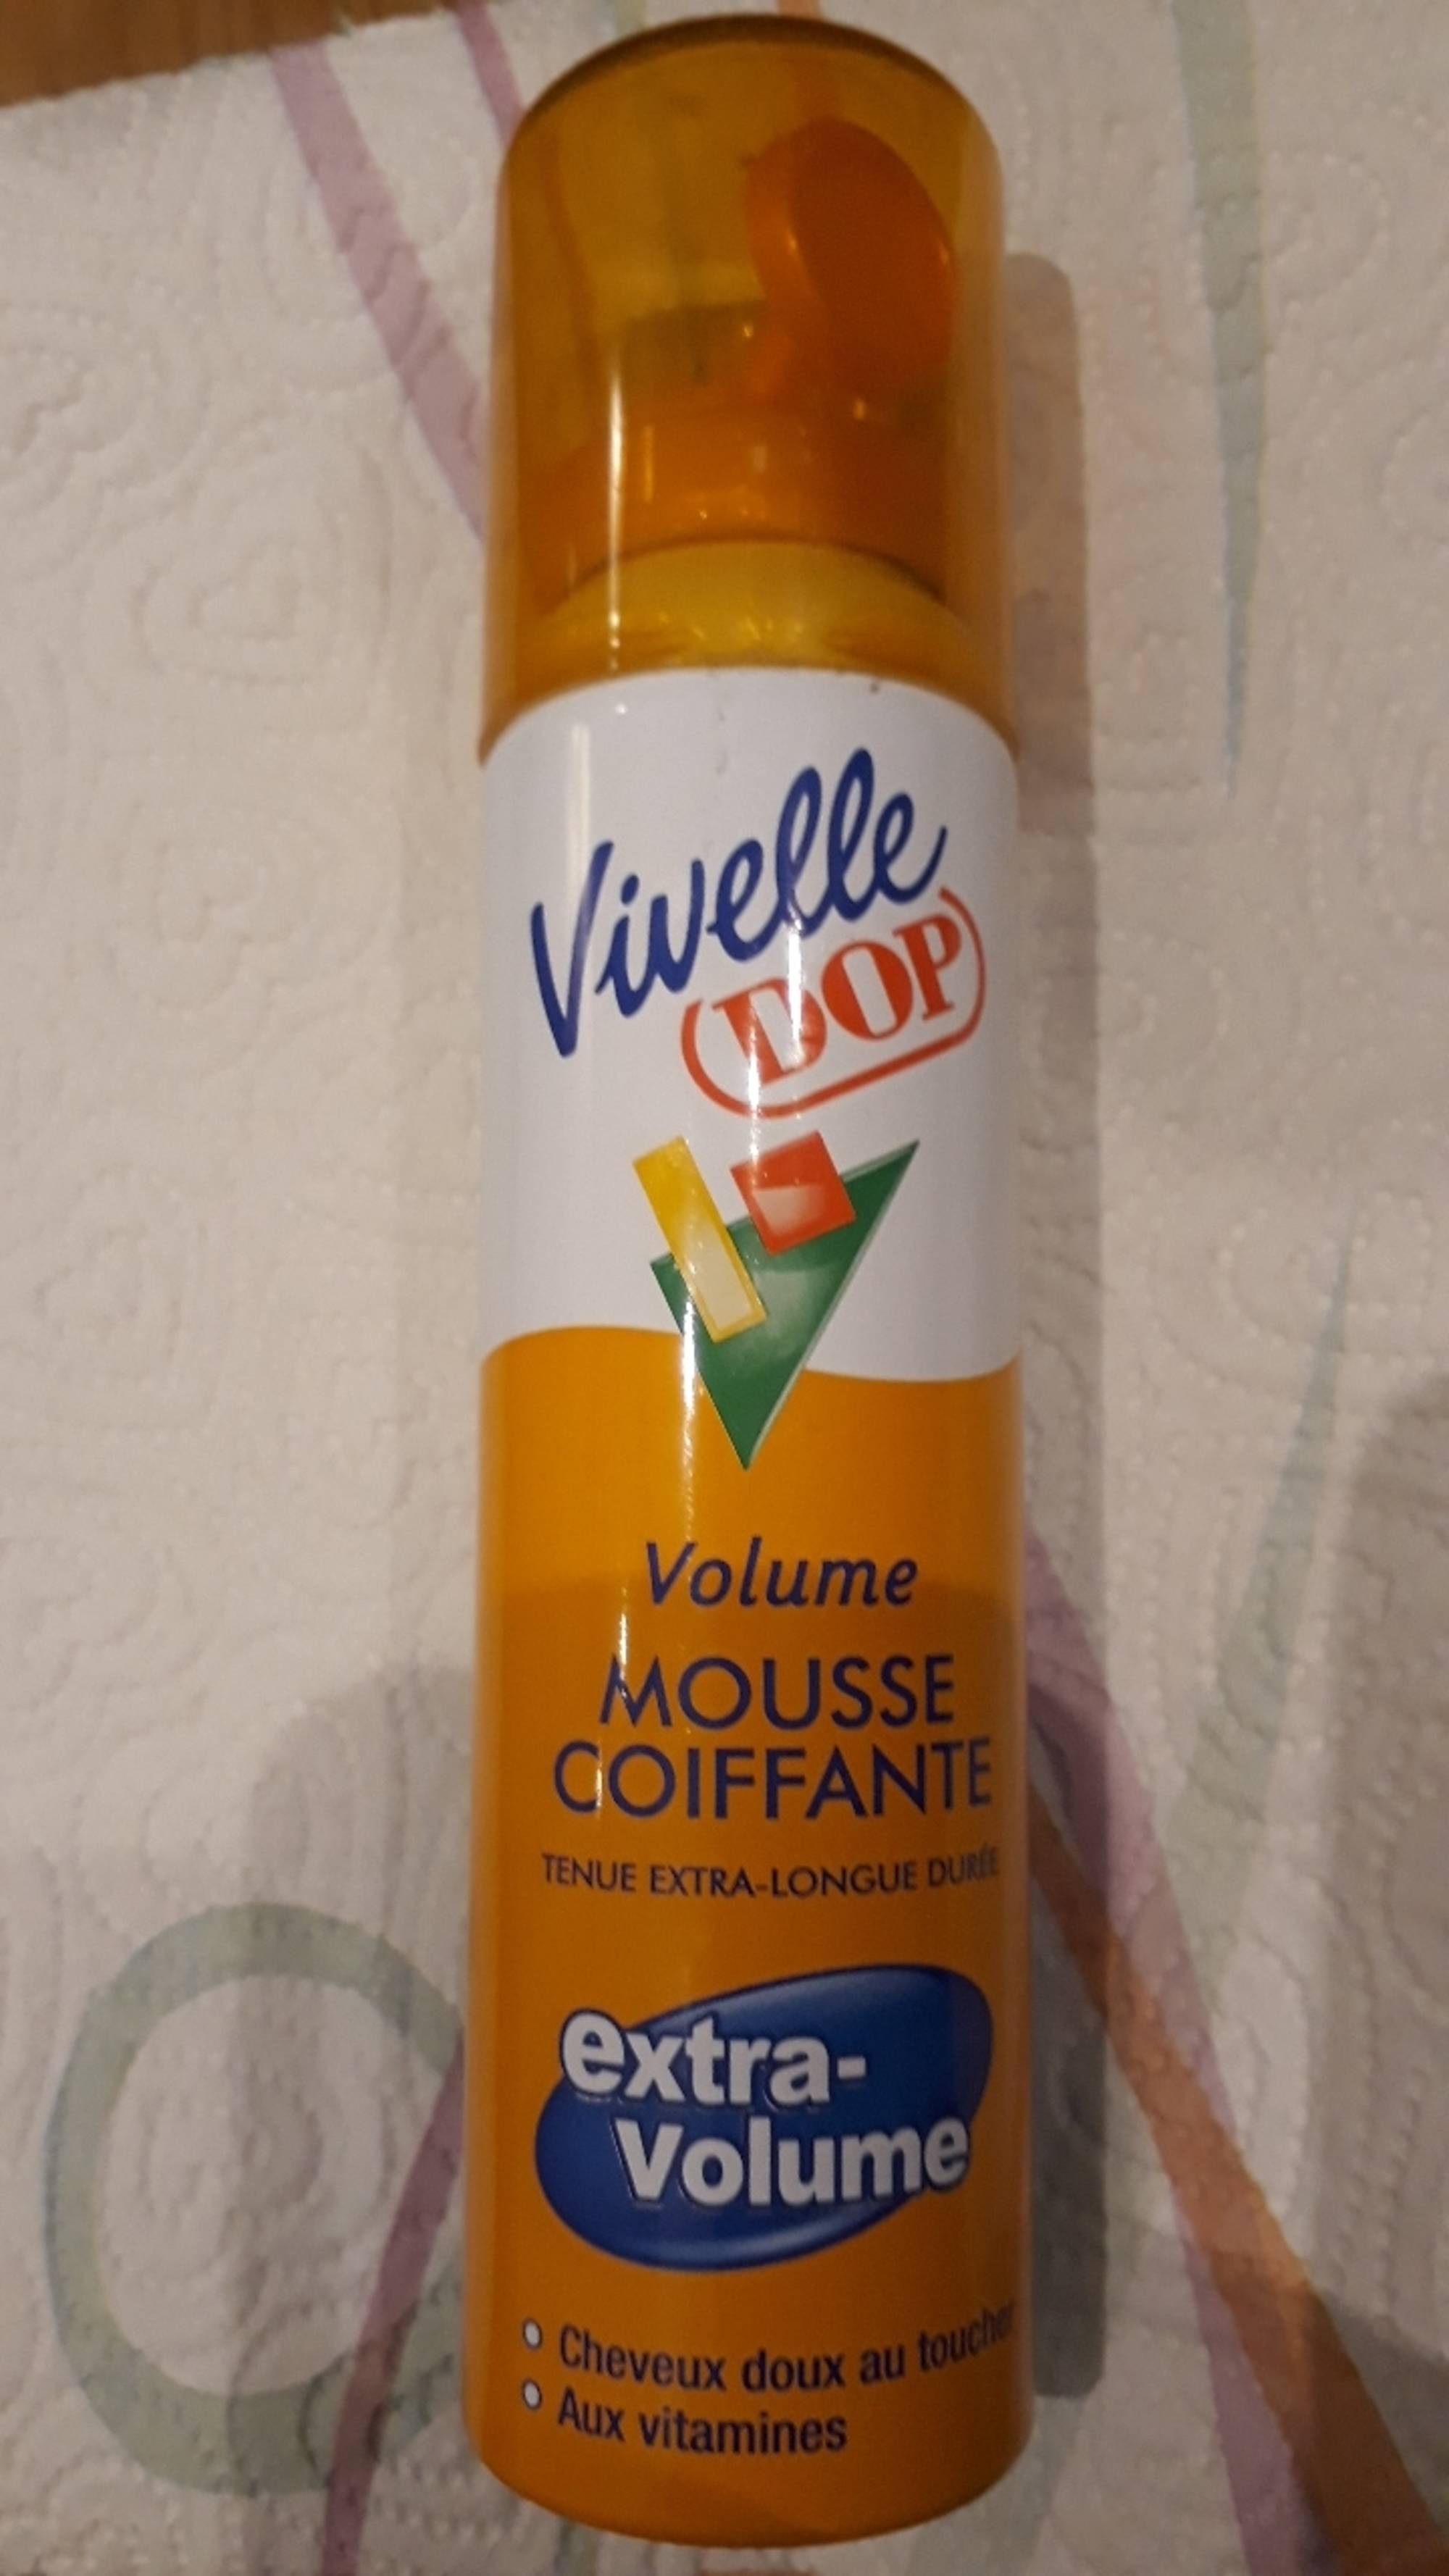 DOP - Vivelle - Mousse coiffante extra-volume